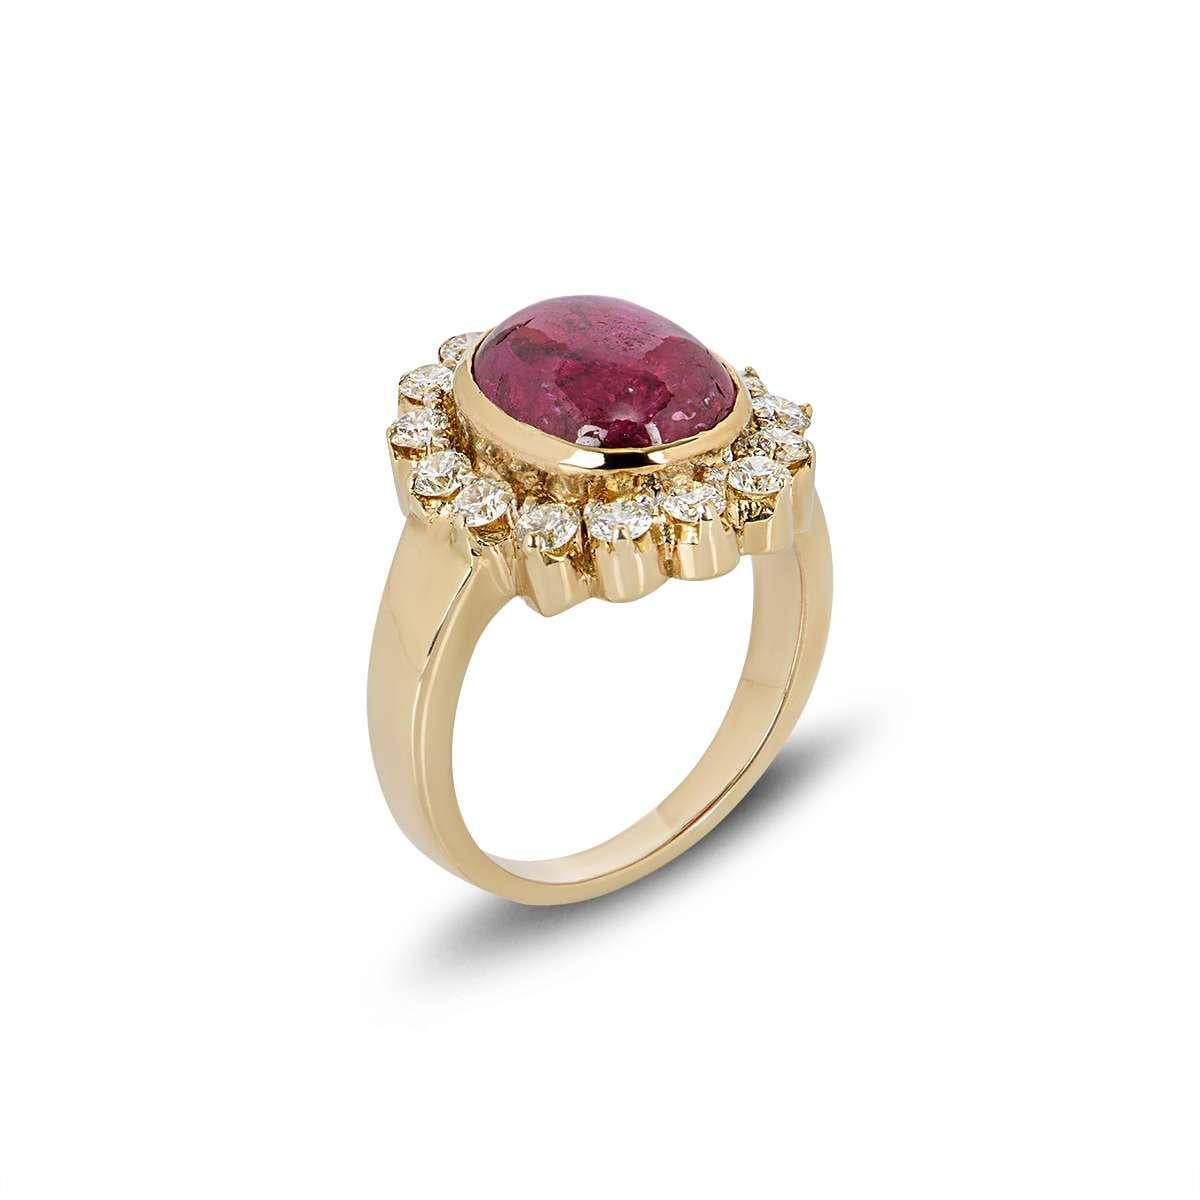 Ein schöner Ring aus 18 Karat Gelbgold mit Diamanten und natürlichen Rubinen. Der Ring ist in der Mitte mit einem ovalen Rubin in Rubinfassung mit einem Gewicht von 5,03 ct besetzt. Der zentrale Stein wird von 15 runden Diamanten im Brillantschliff